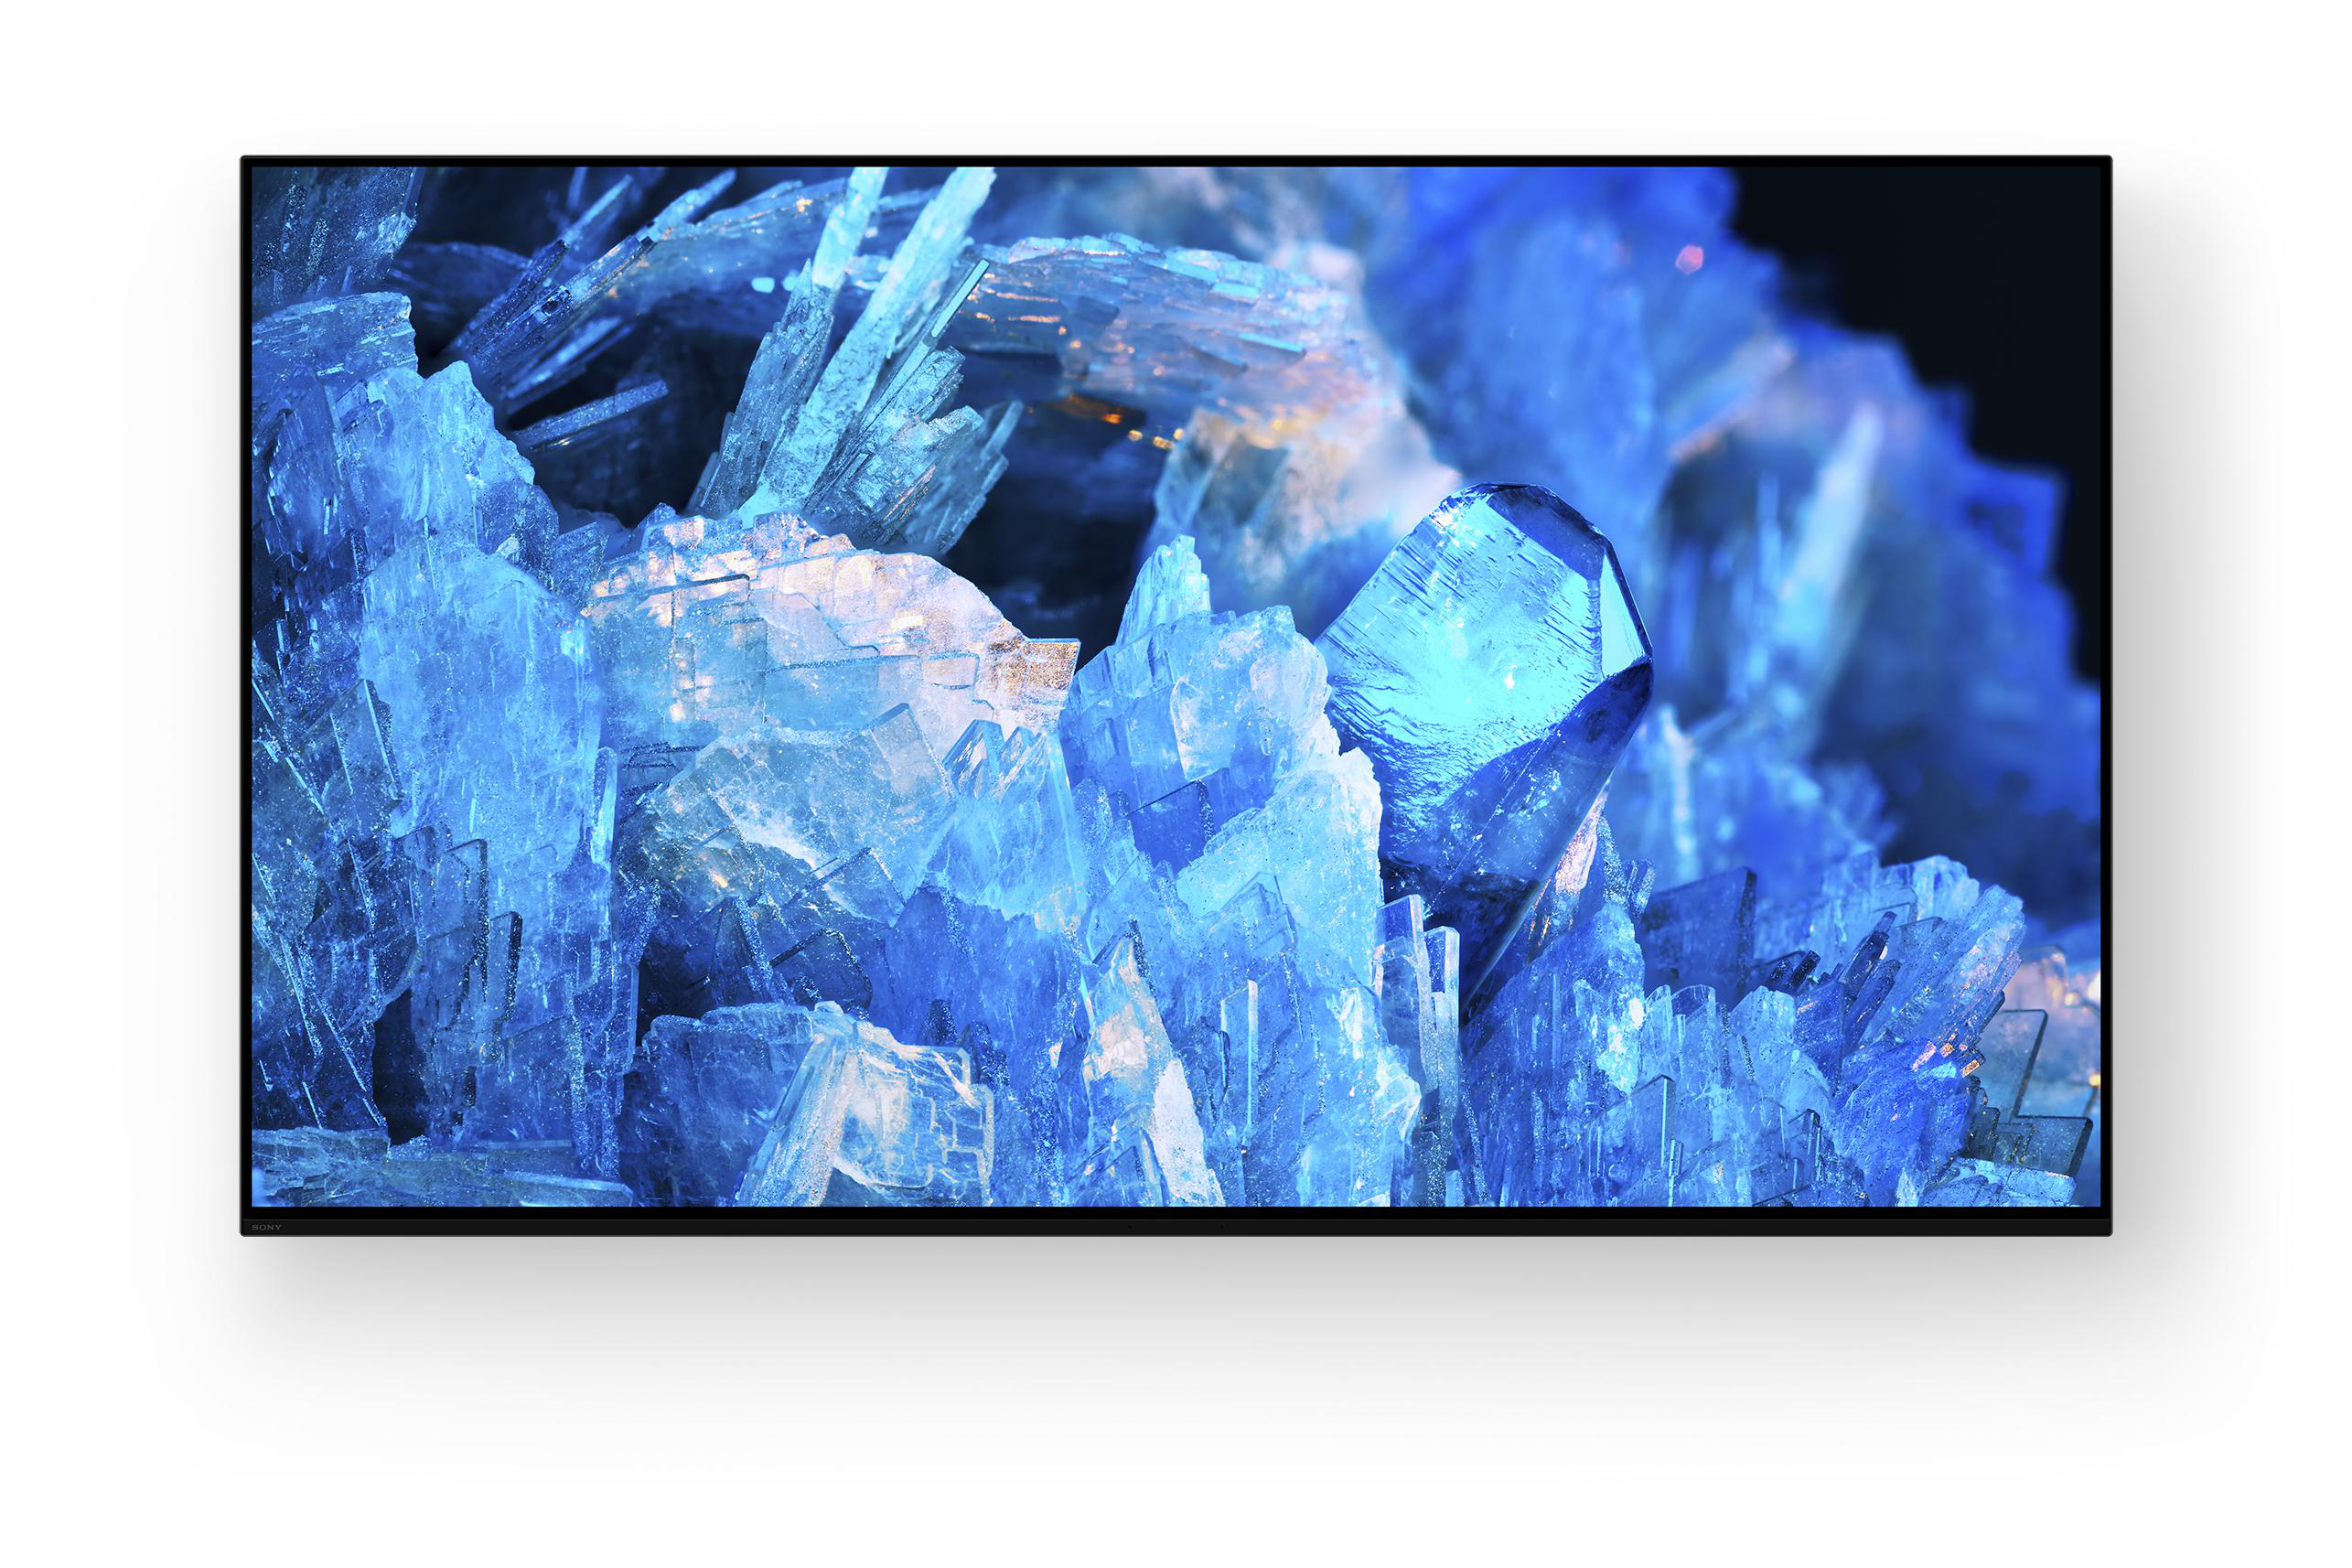 cm, Zoll TV, OLED OLED SMART Google / BRAVIA TV 4K, (Flat, XR-65A75K 65 TV) 164 SONY